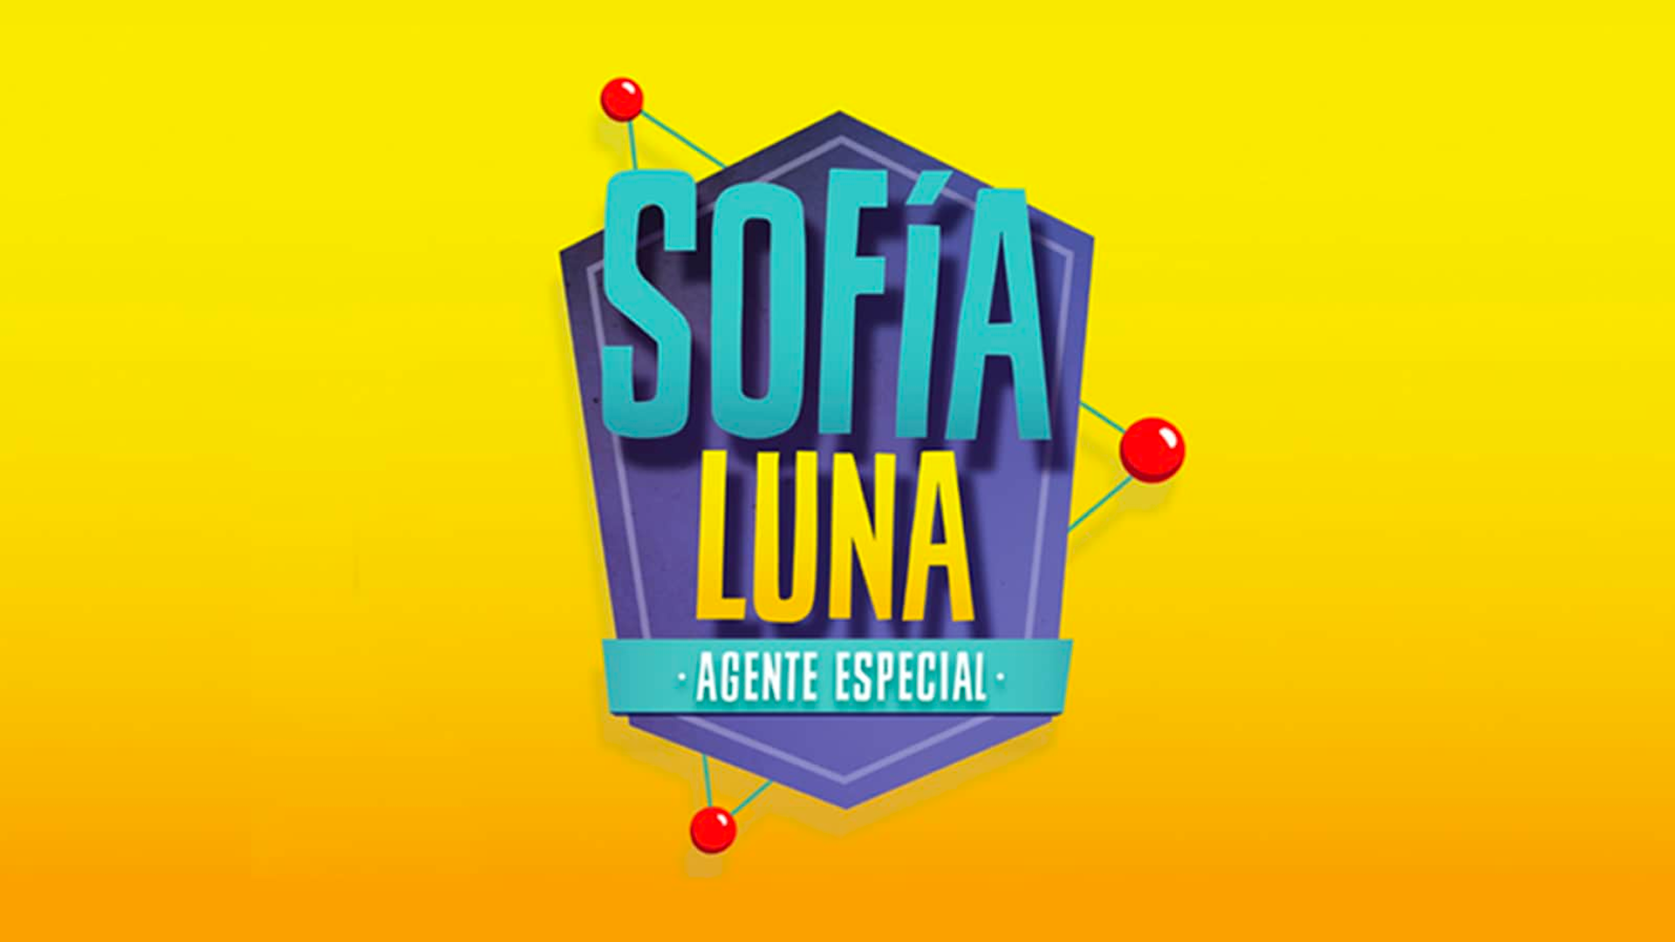 Sofía Luna, Agente Especial